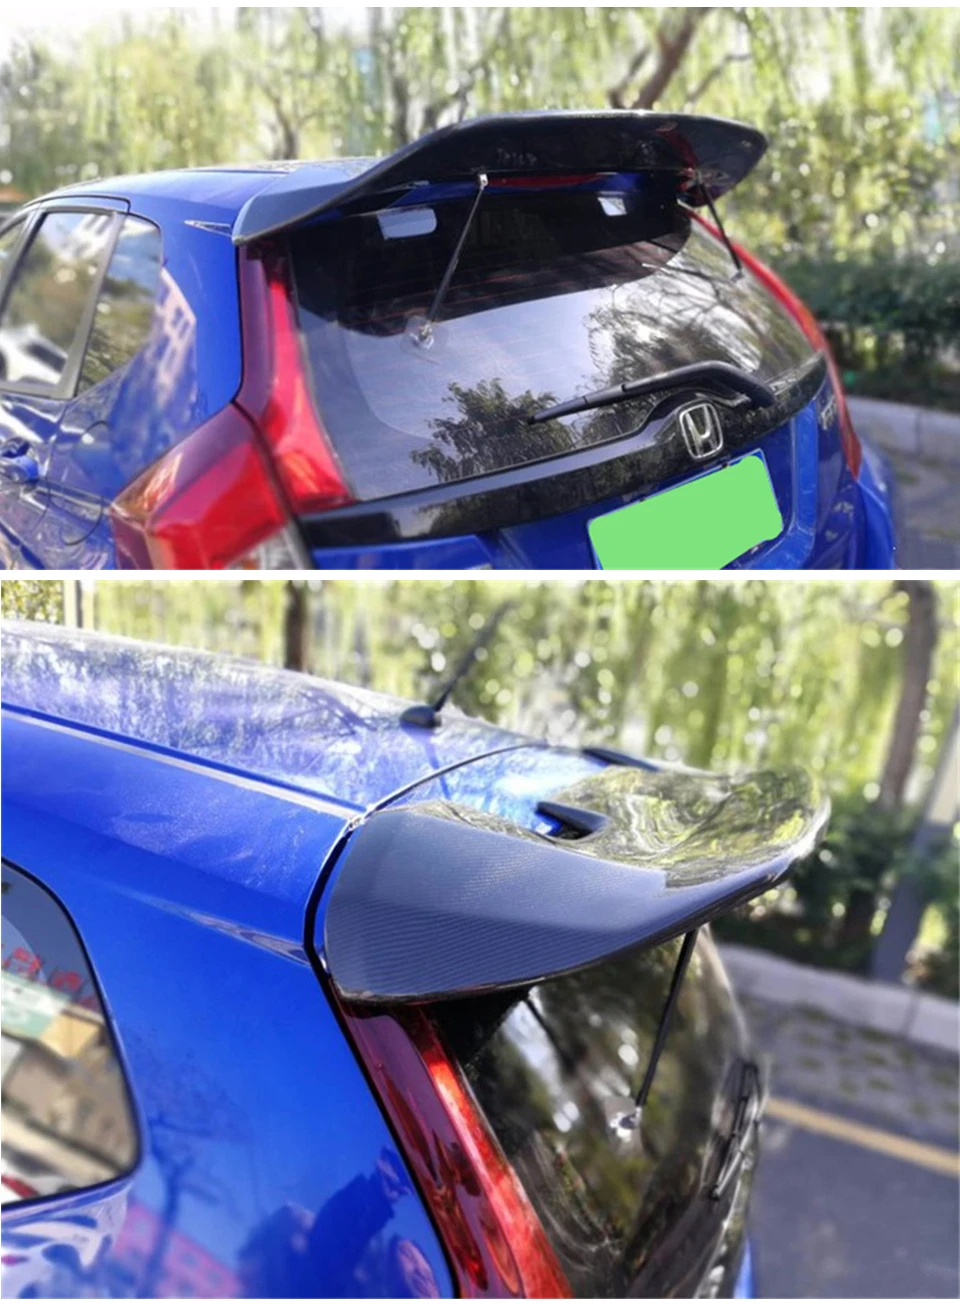 Спойлер из углеродного волокна для Honda JAZZ Fit, спойлер на крыше, крыло JDM Gk5-2019Year, углеродное волокно, спортивный автомобиль, переоборудование, аксессуары